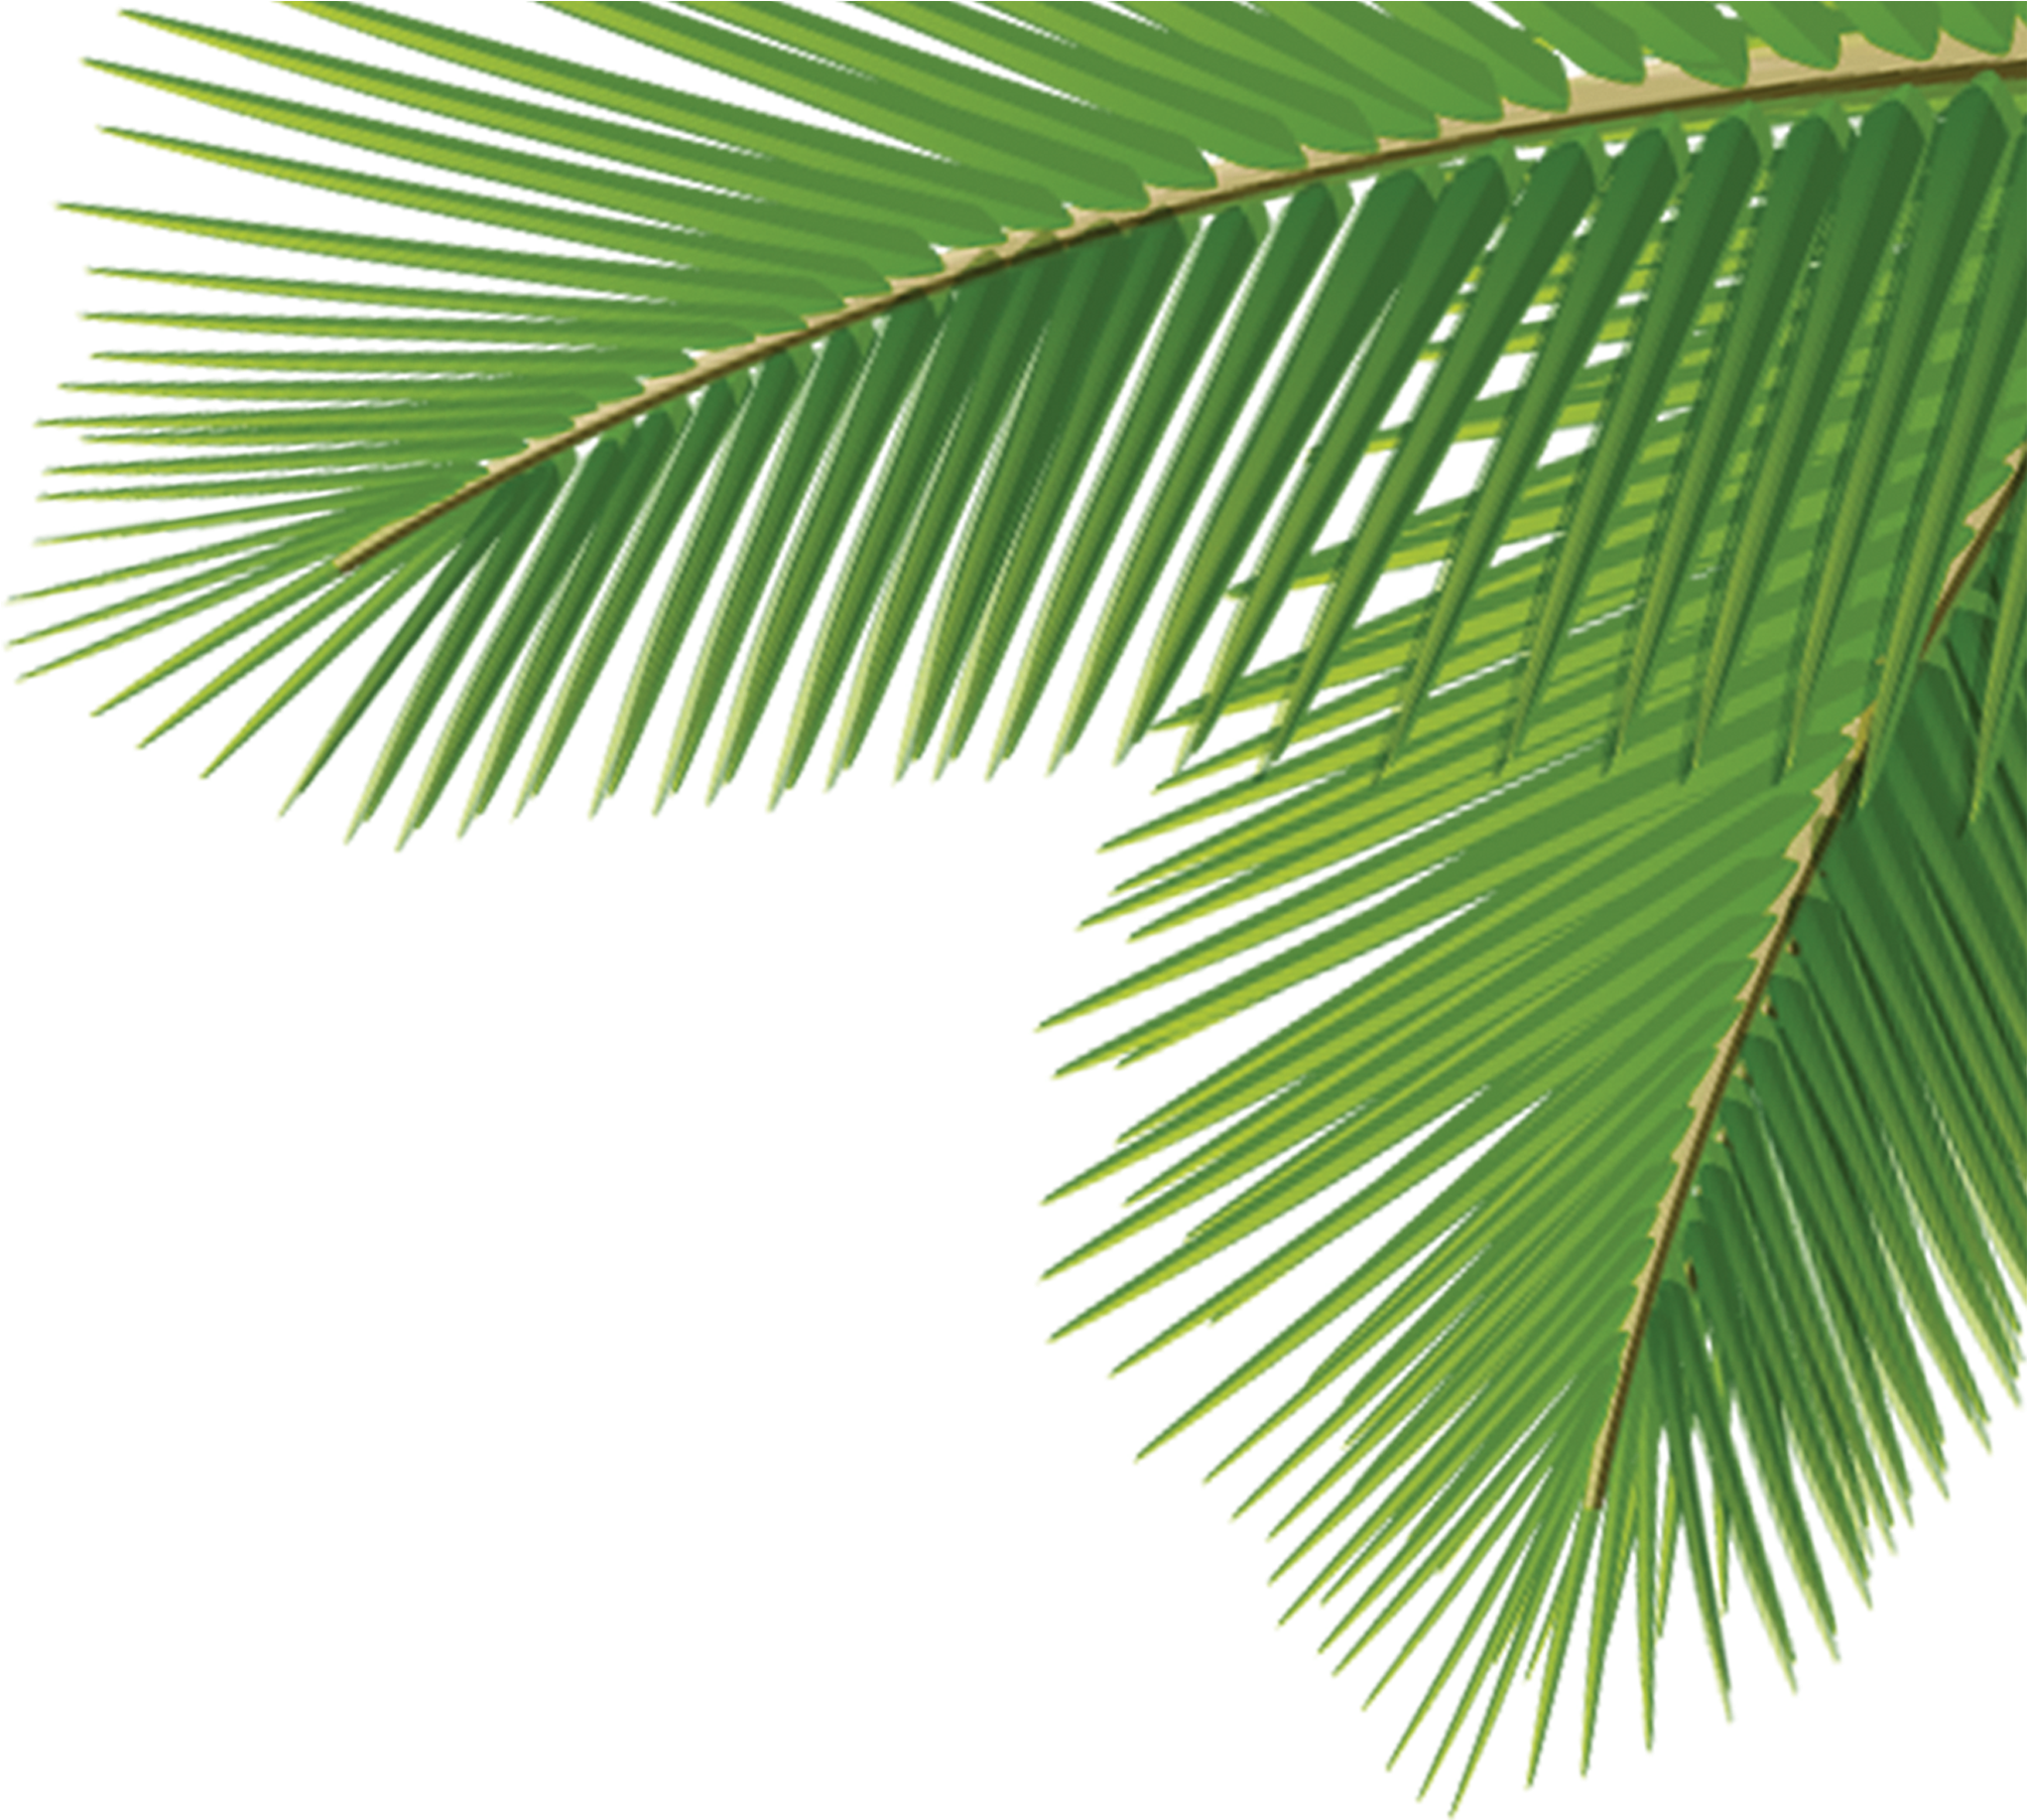 A Close Up Of A Palm Tree Leaf